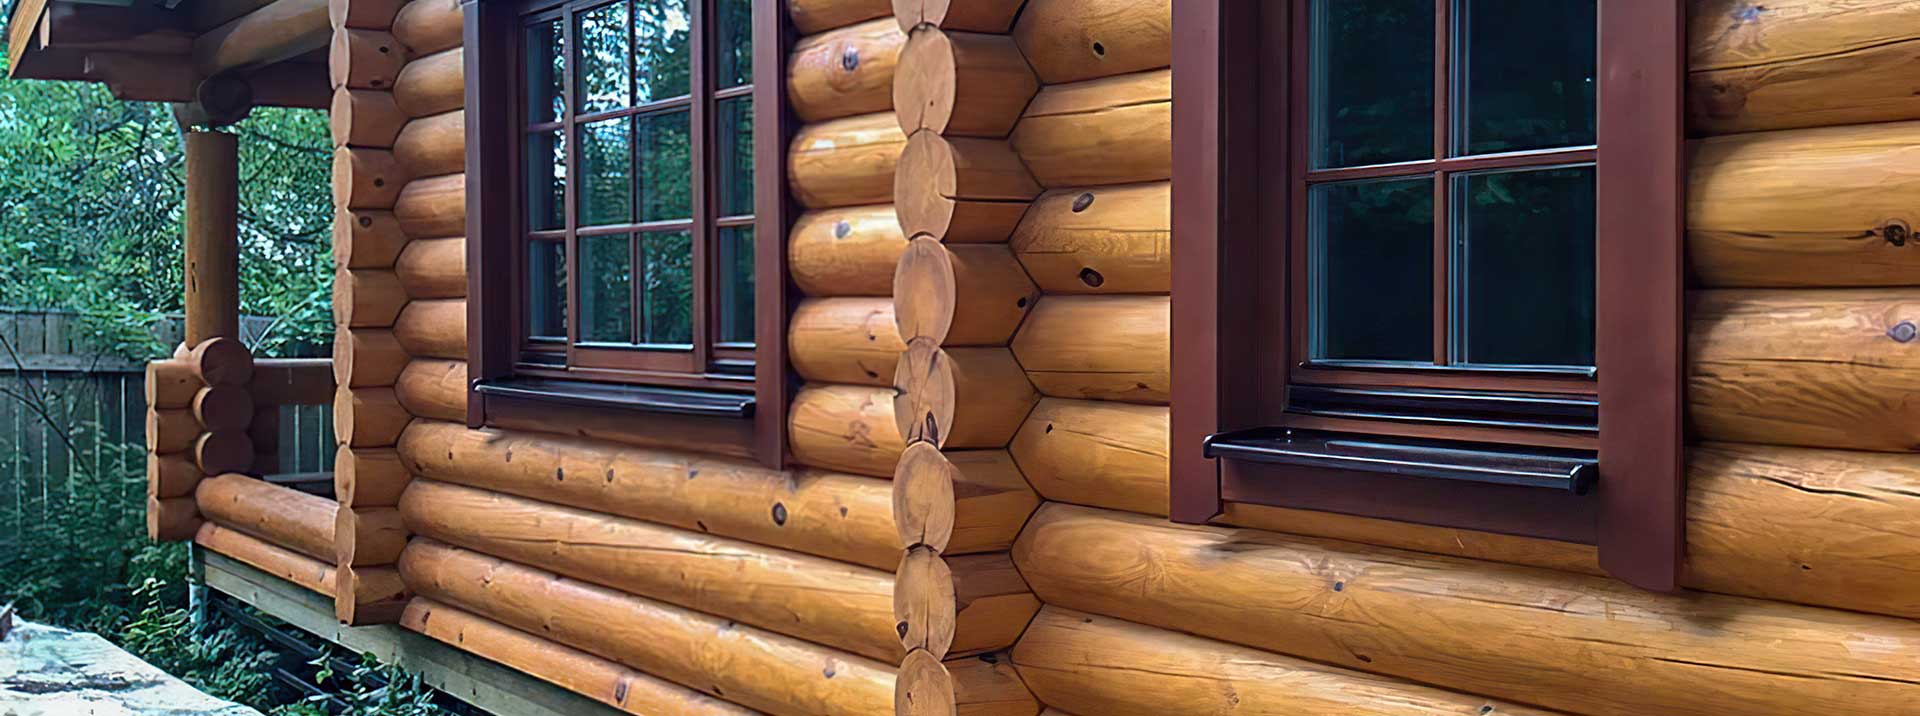 Как правильно выбрать окна для деревянного дома: советы и рекомендации